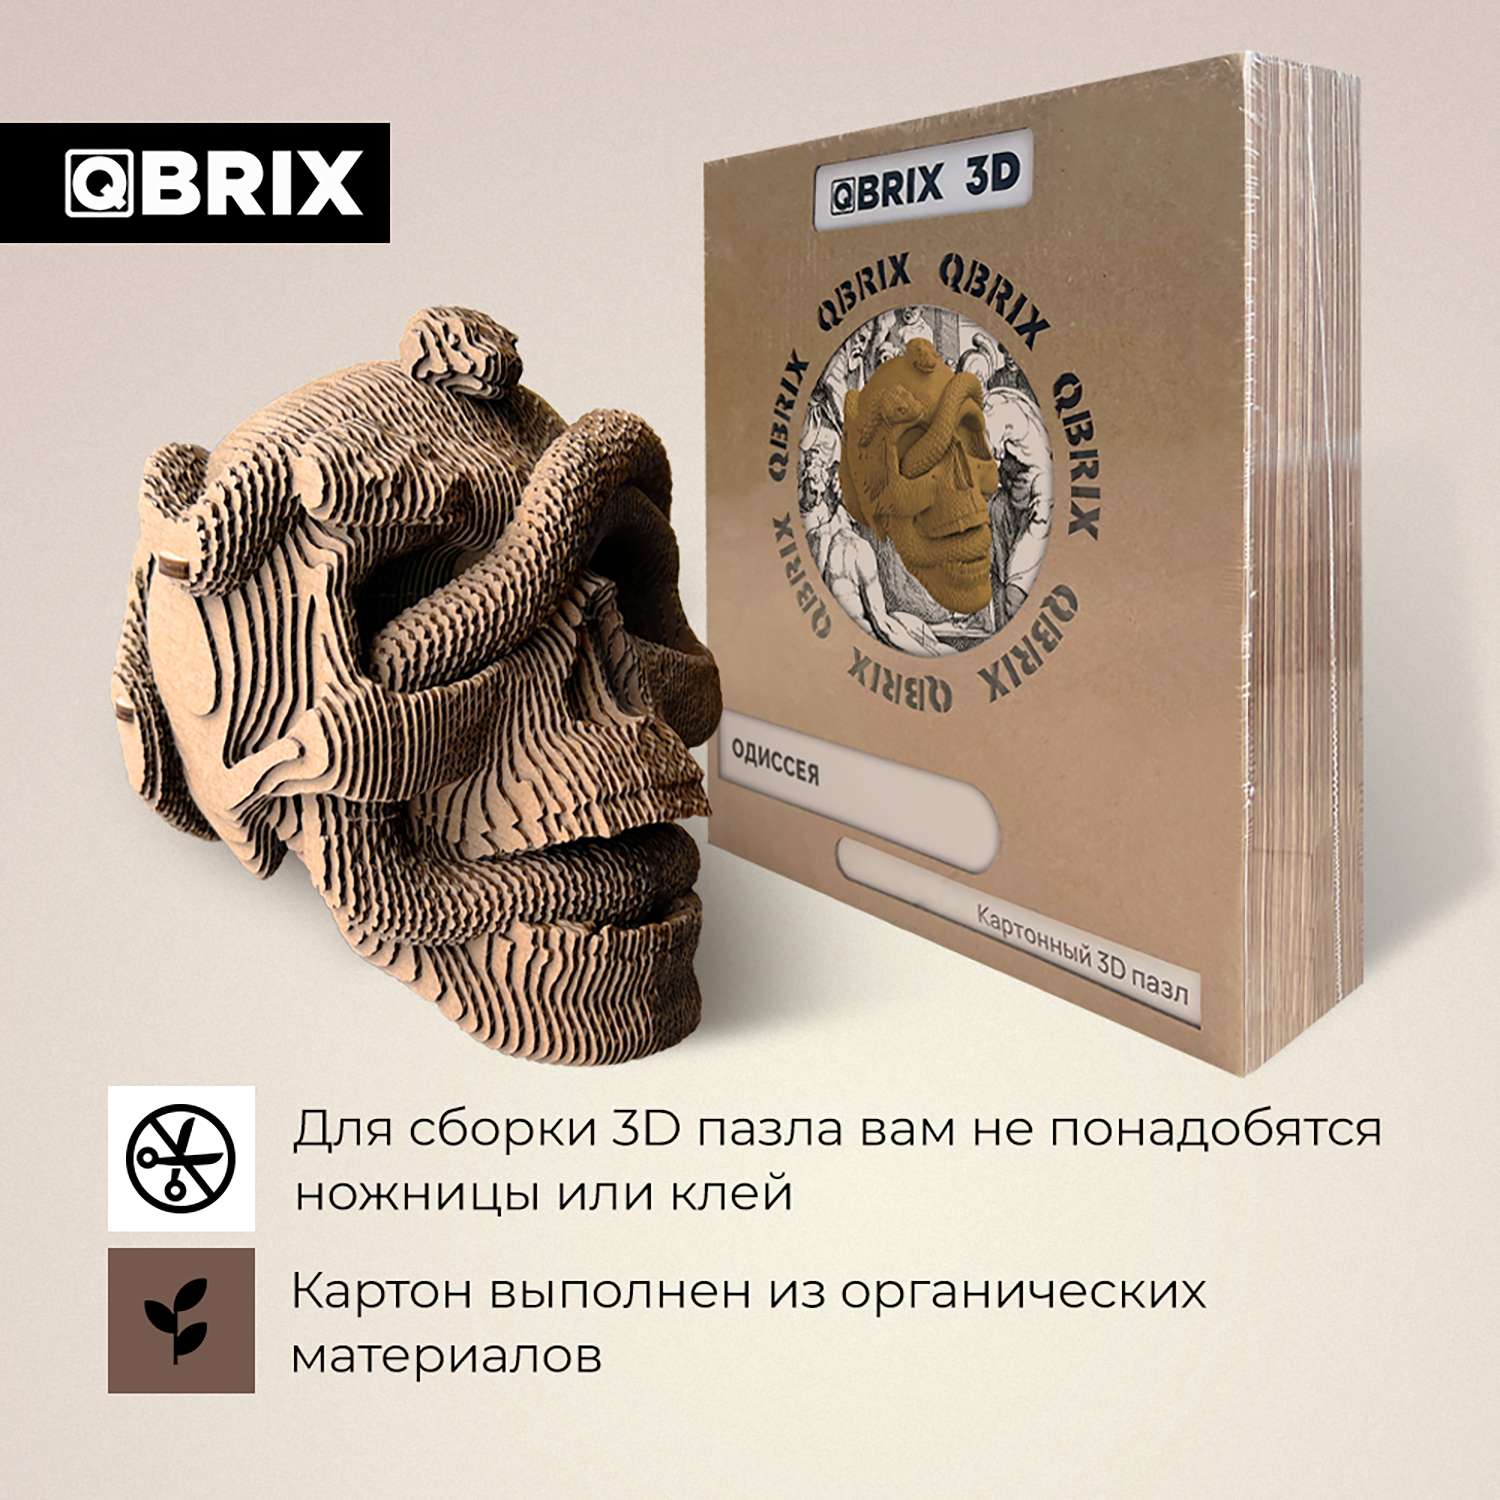 Конструктор QBRIX 3D картонный Одиссея 20020 20020 - фото 3